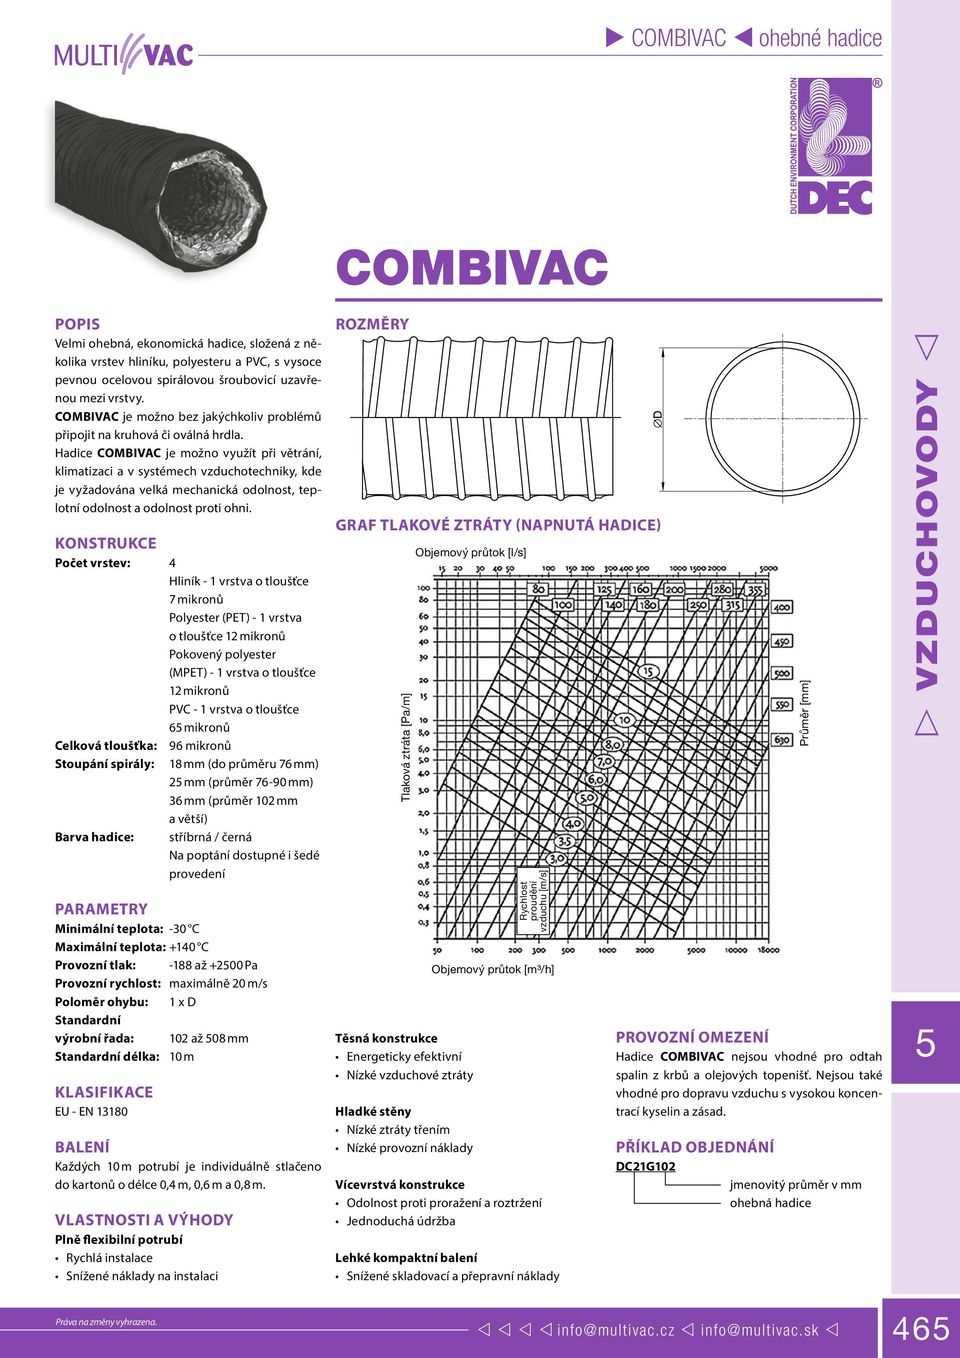 Hadice COMBIVAC je možno využít při větrání, klimatizaci a v systémech vzduchotechniky, kde je vyžadována velká mechanická odolnost, teplotní odolnost a odolnost proti ohni.